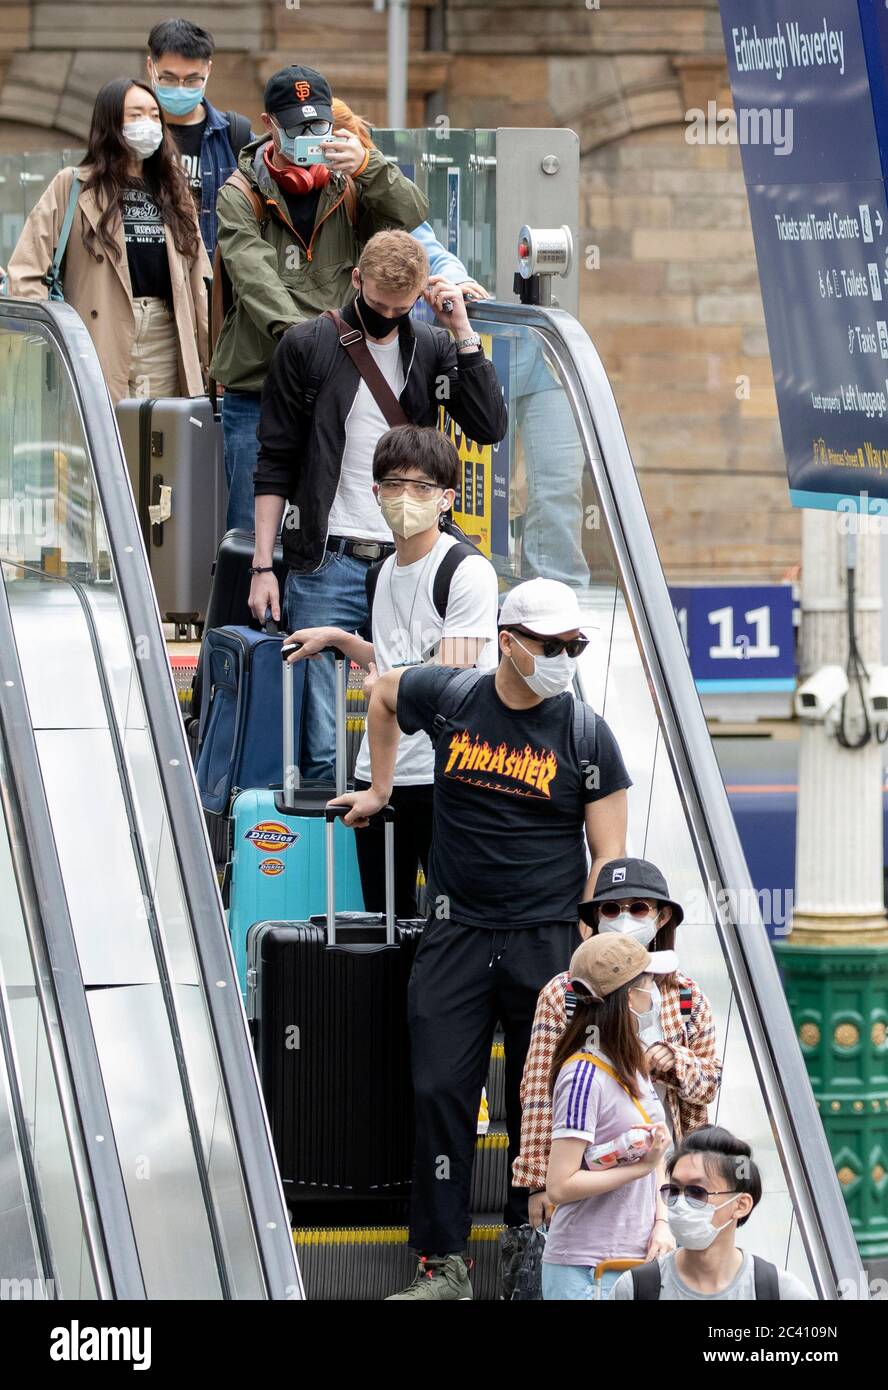 Die Öffentlichkeit trägt Schutzmasken in der Waverley Station in Edinburgh, während Schottland in die zweite Phase seines vierstufigen Plans übergeht, um den Lockdown zu erleichtern. Stockfoto